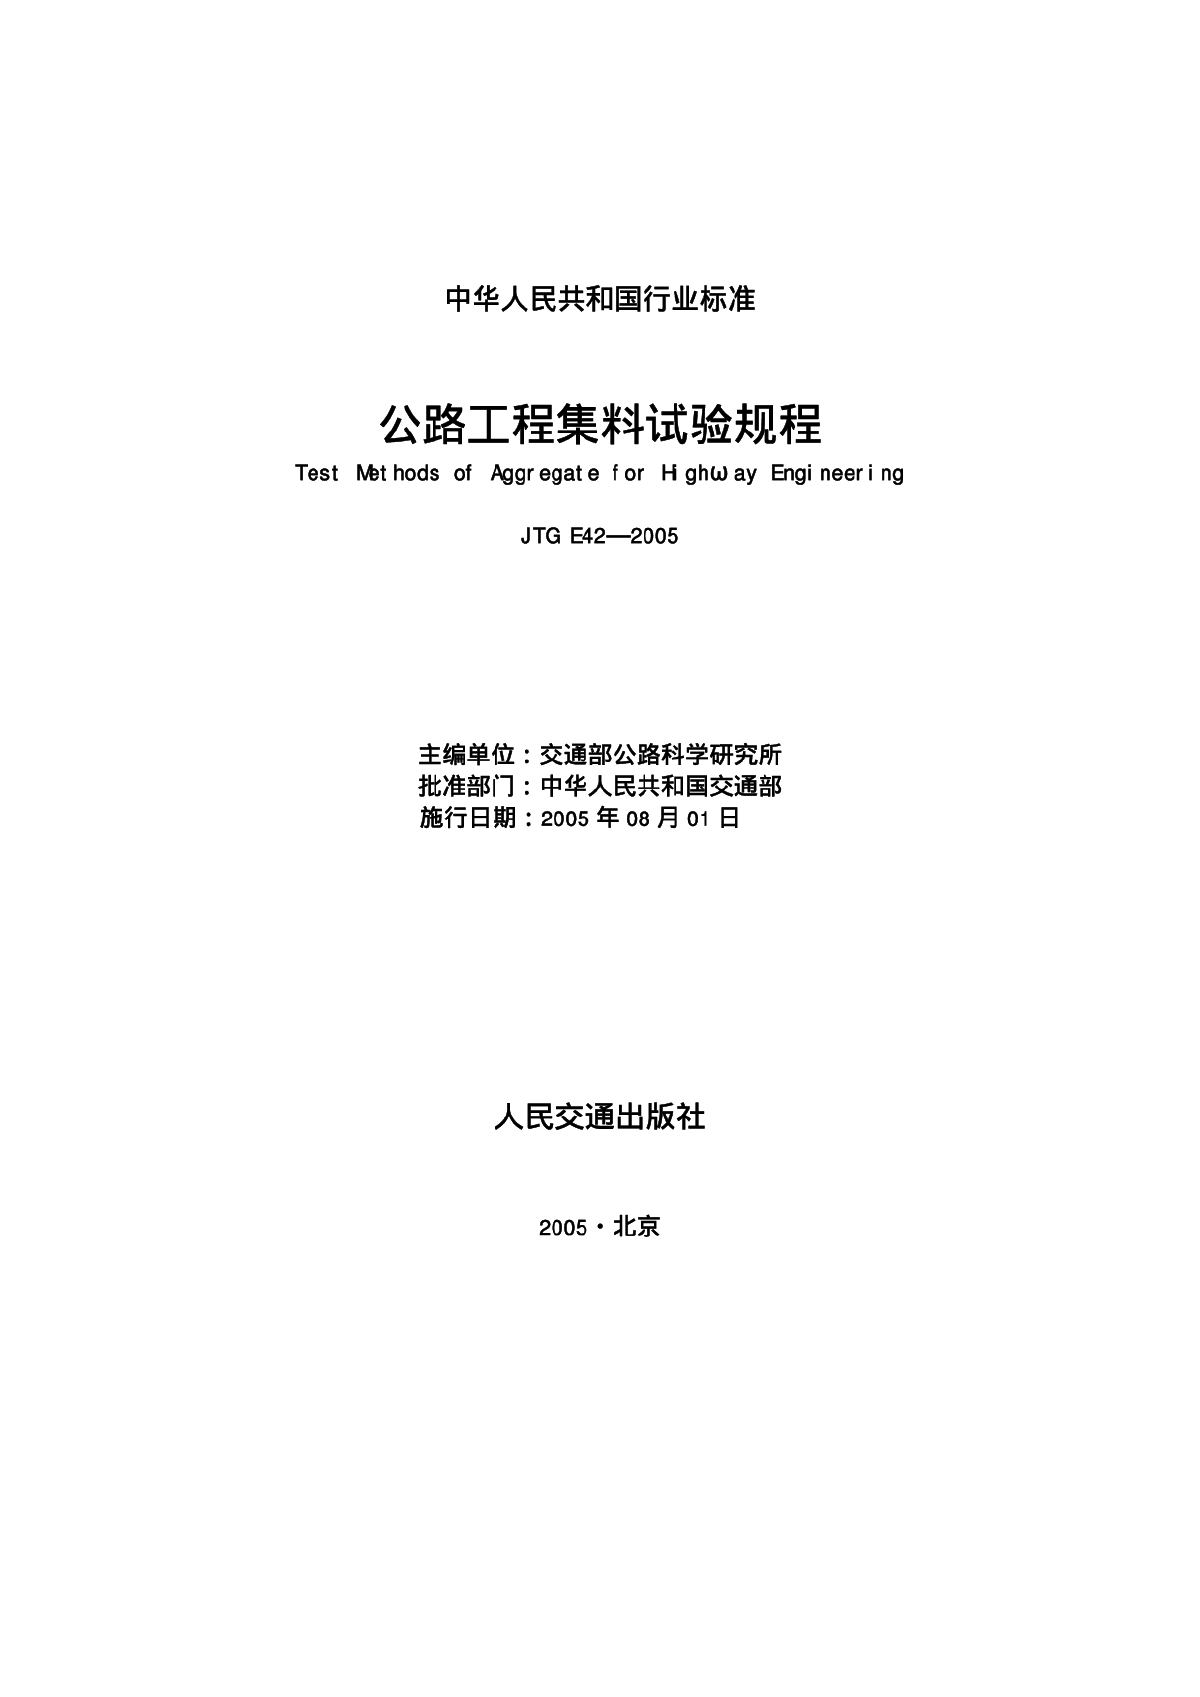 《公路工程集料试验规程》(JTGE42-2005).pdf-图一